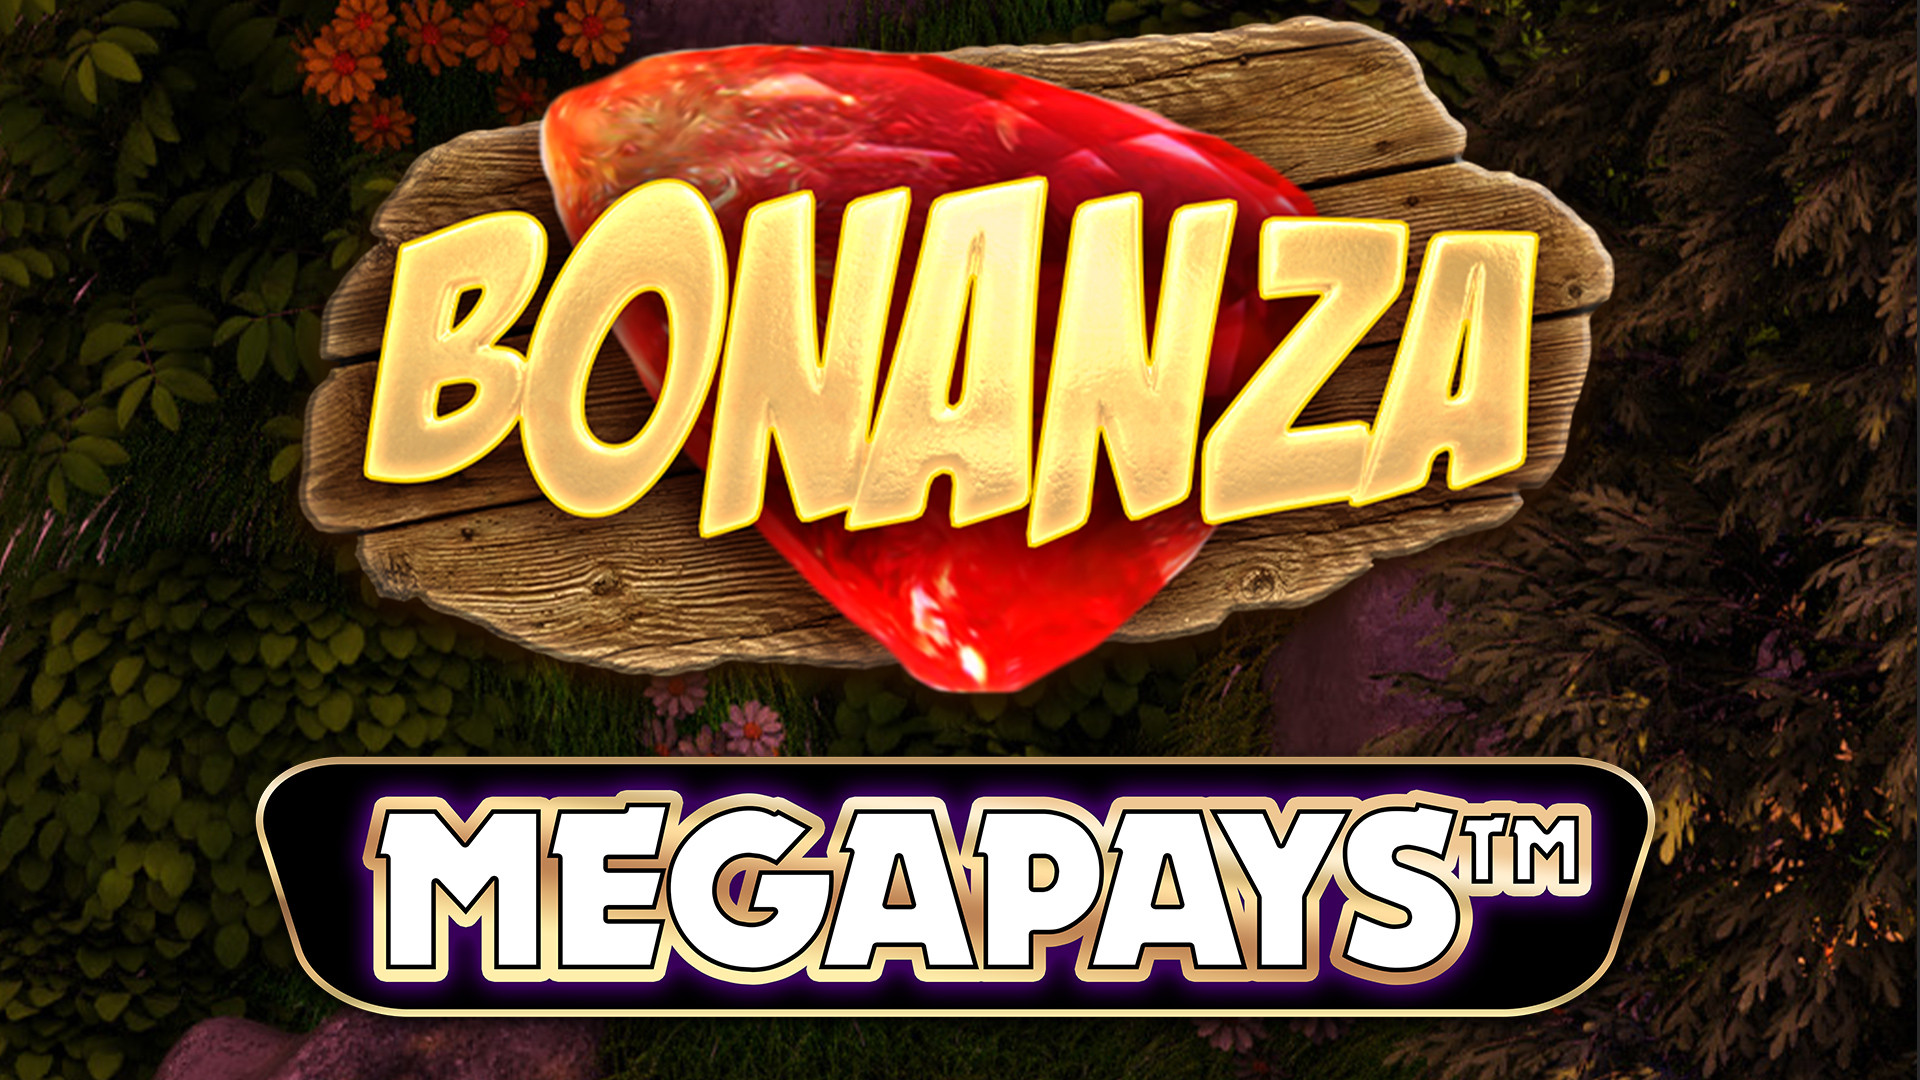 Bonanza MEGAPAYS